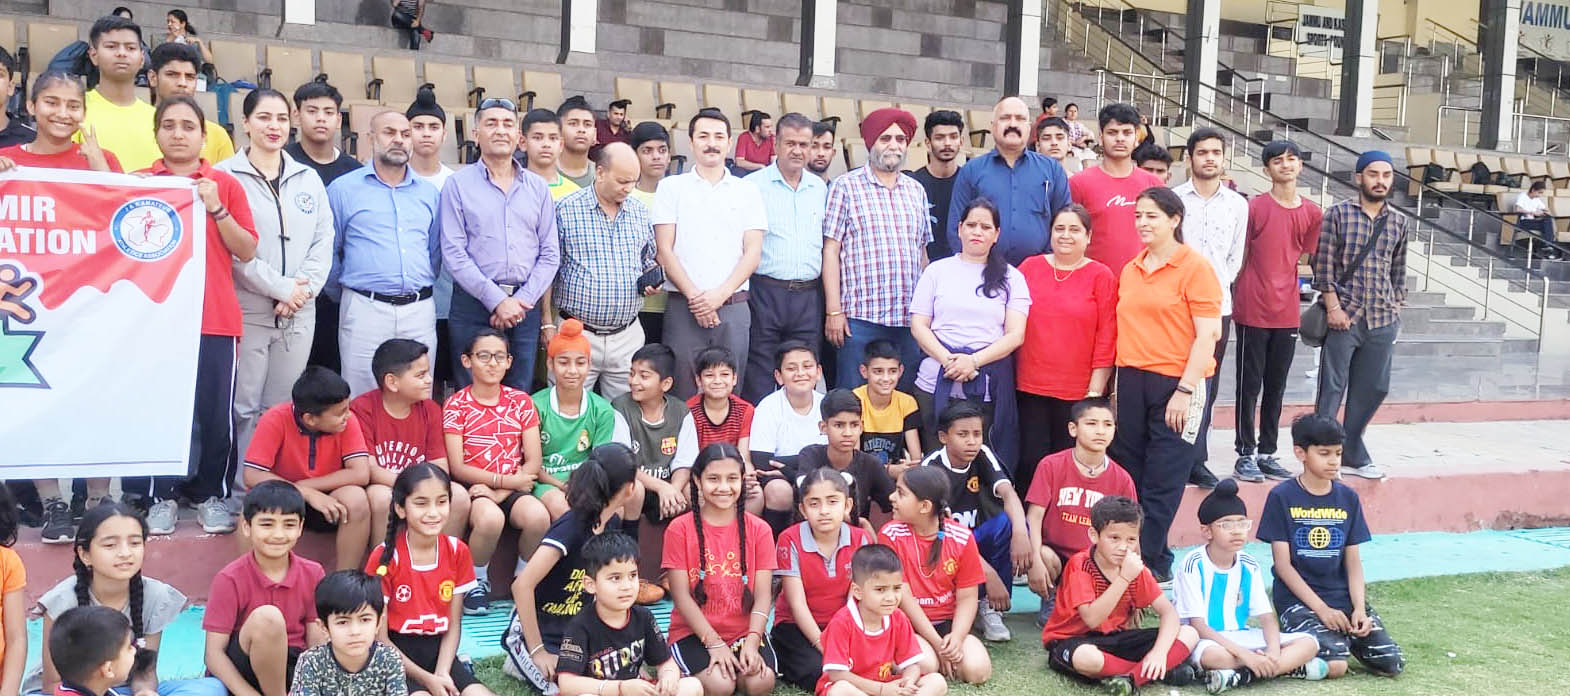 Jammu celebrates World Athletics Day